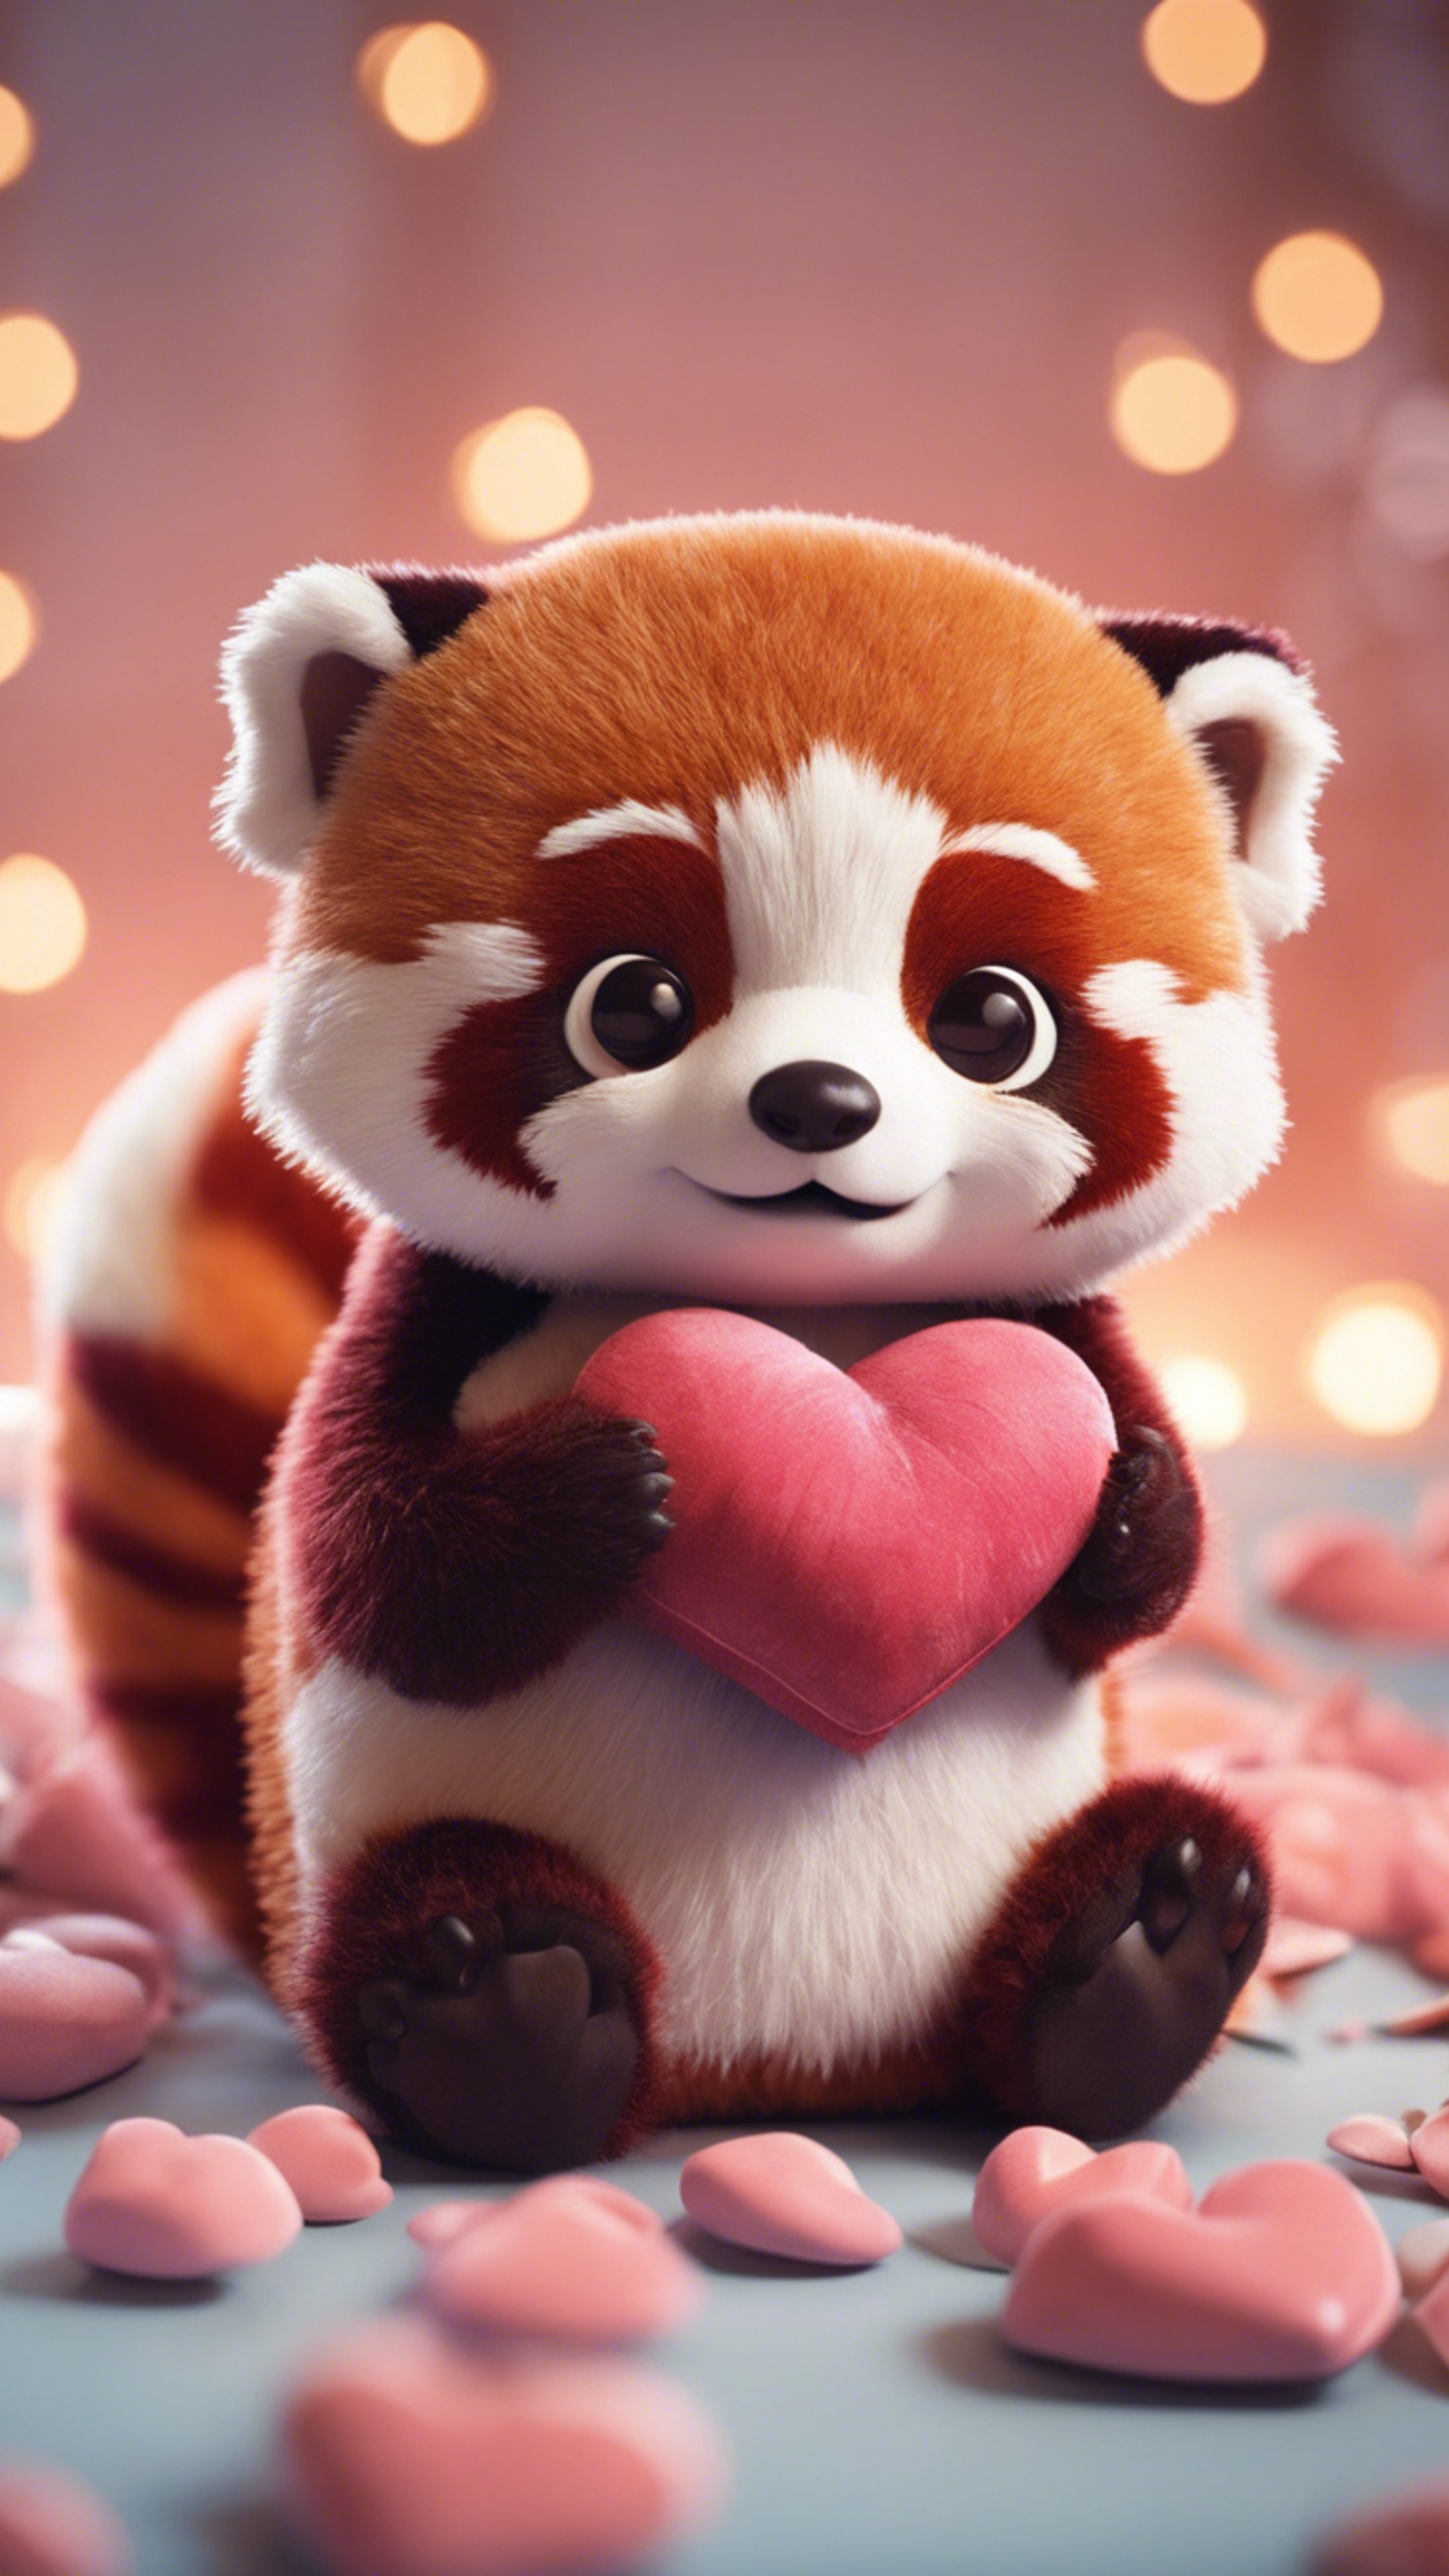 A kawaii red panda, wide-eyed, hugging a heart-shaped pillow. Tapeta[45d6f15b7fce49d58985]